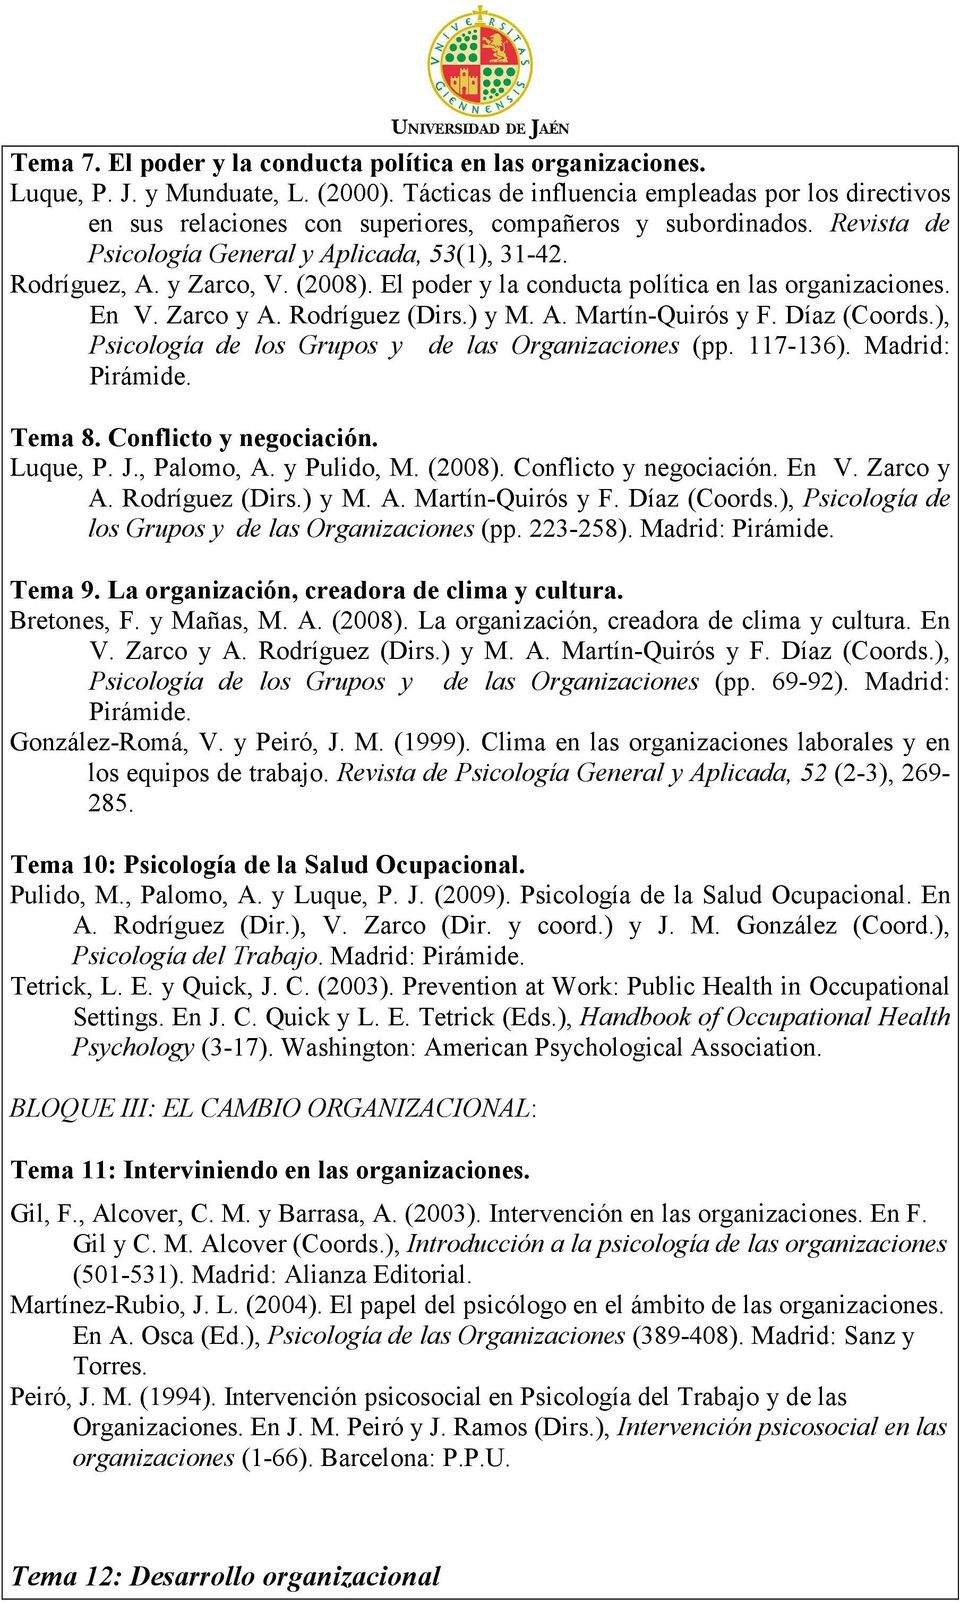 (2008). El poder y la conducta política en las organizaciones. En V. Zarco y A. Rodríguez (Dirs.) y M. A. Martín-Quirós y F. Díaz (Coords.), Psicología de los Grupos y de las Organizaciones (pp.